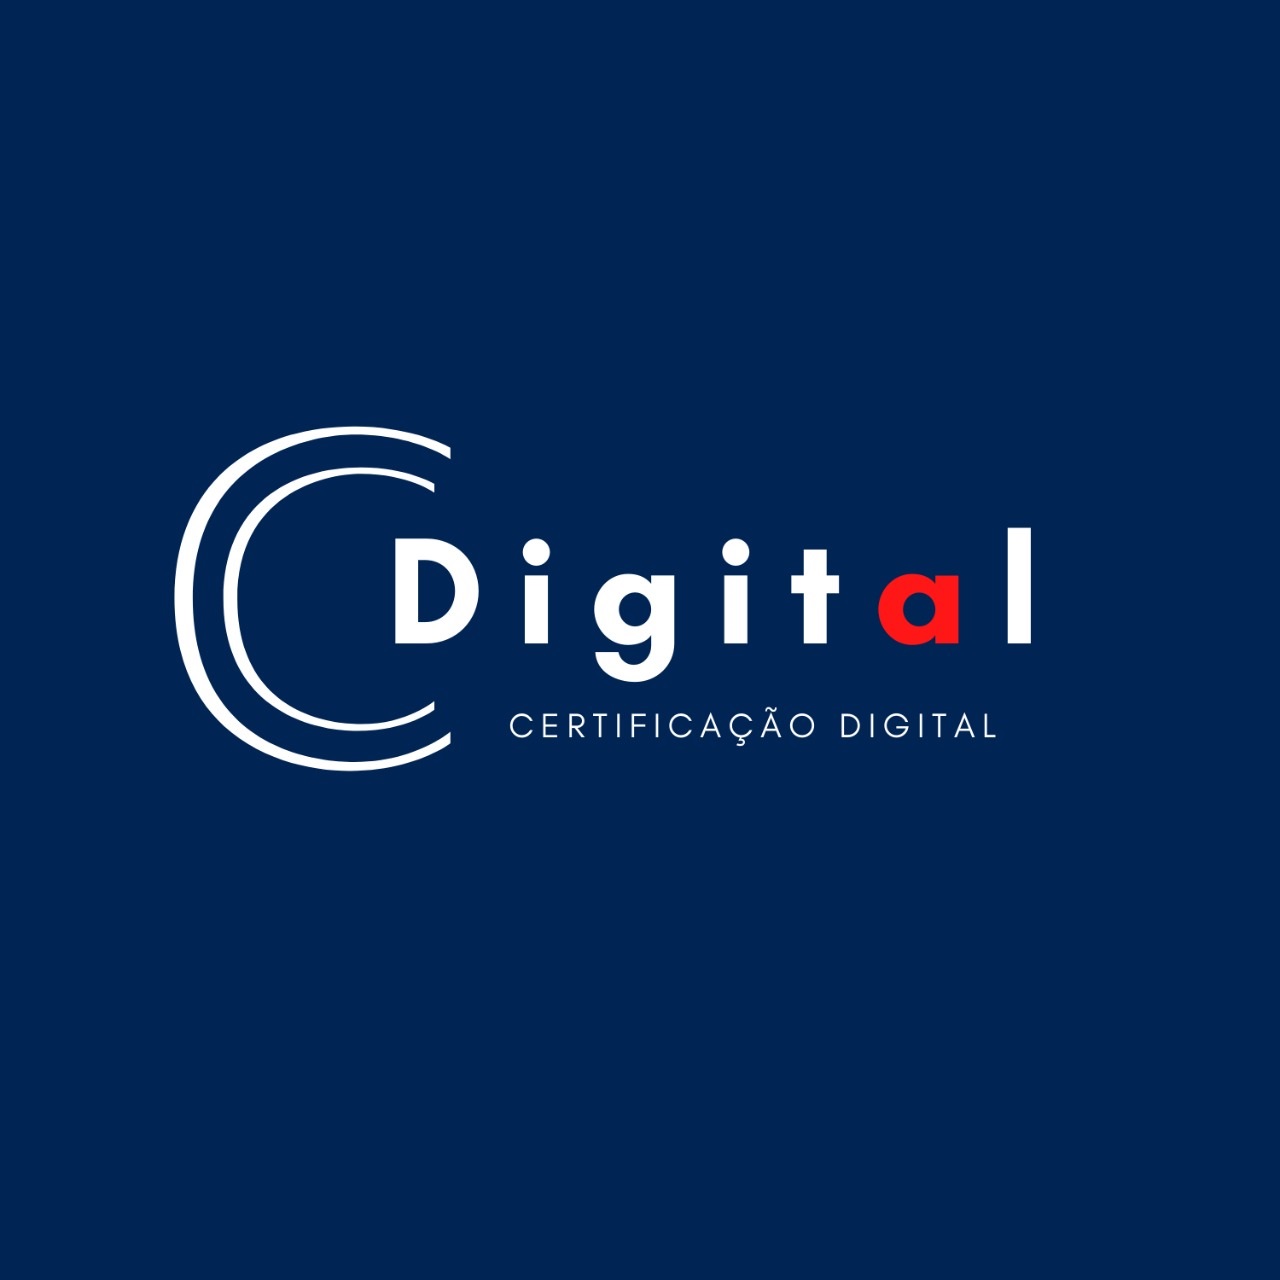 Logotipo do parceiro AR Cdigital &#8211; DKONTÁBIL